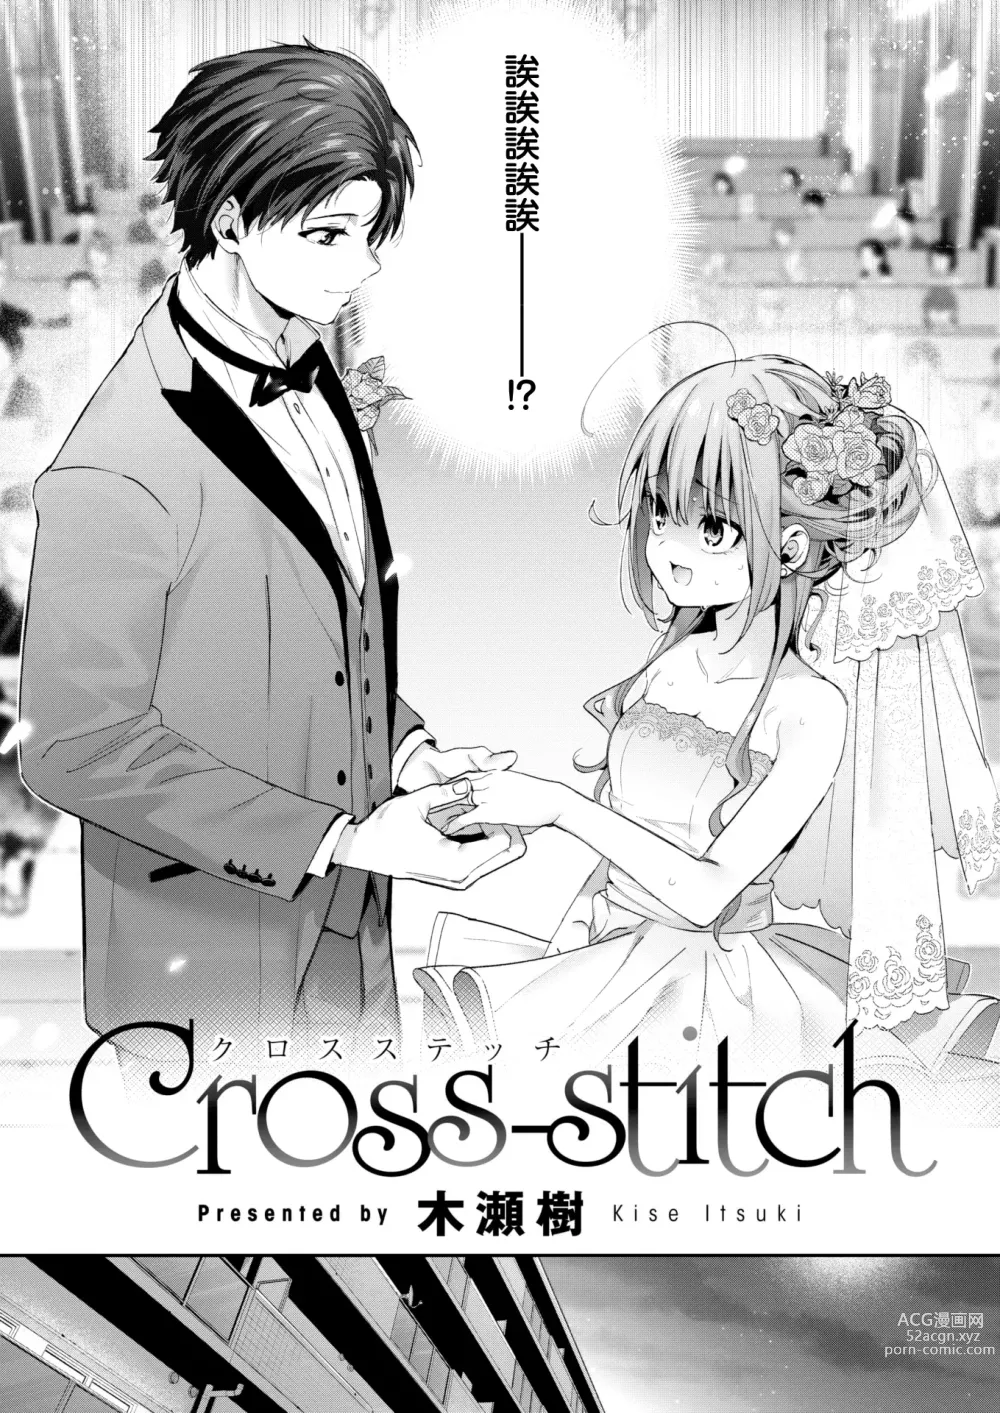 Page 6 of manga Cross-stitch